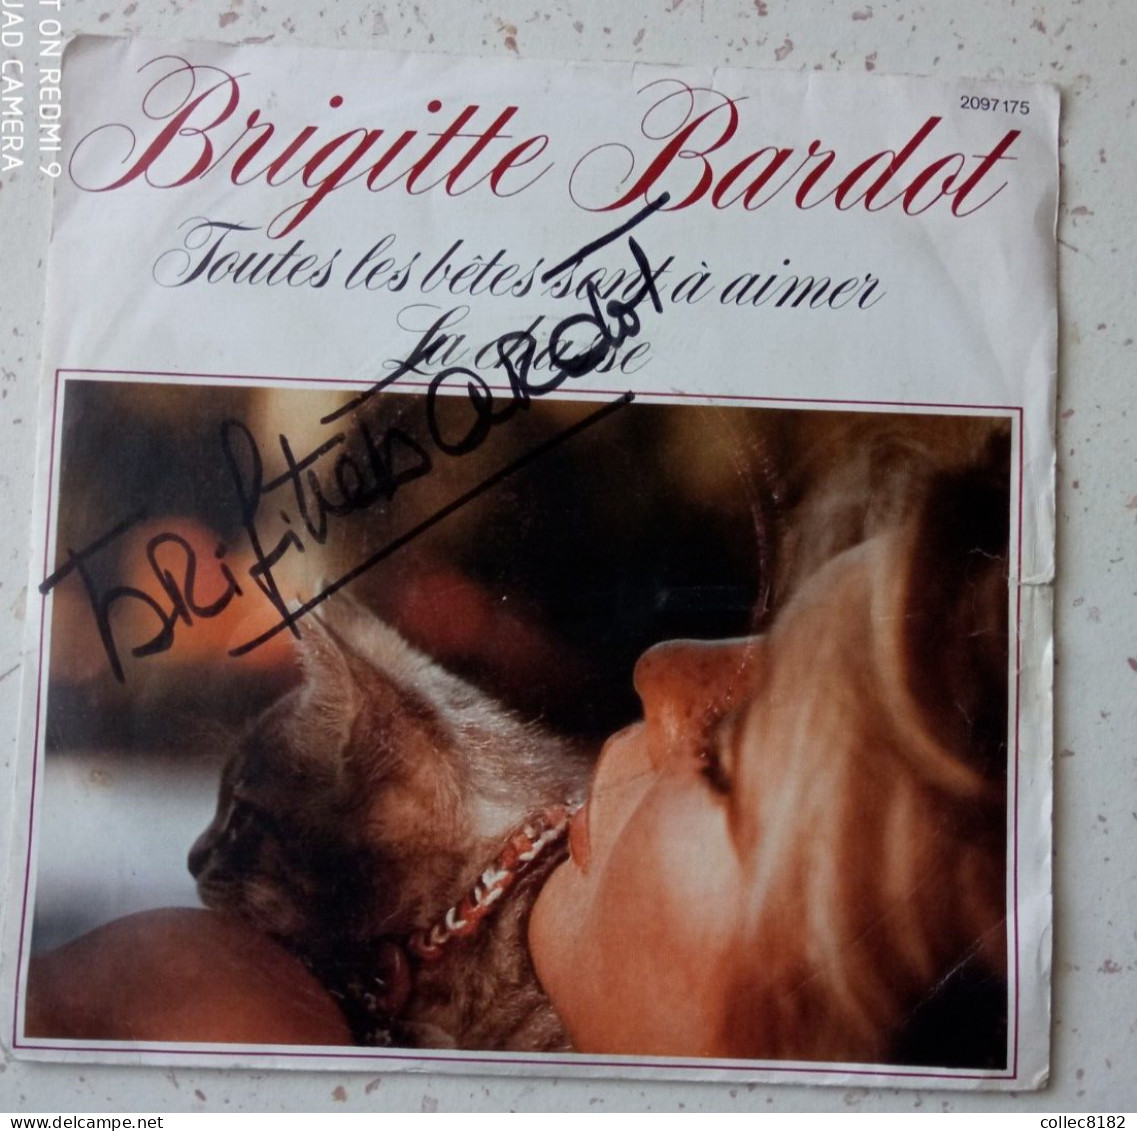 Autographe Original De Brigitte Bardot Sur 45 Tr Toutes Les Bêtes Sont à Aimer Port Offert France - Other - French Music